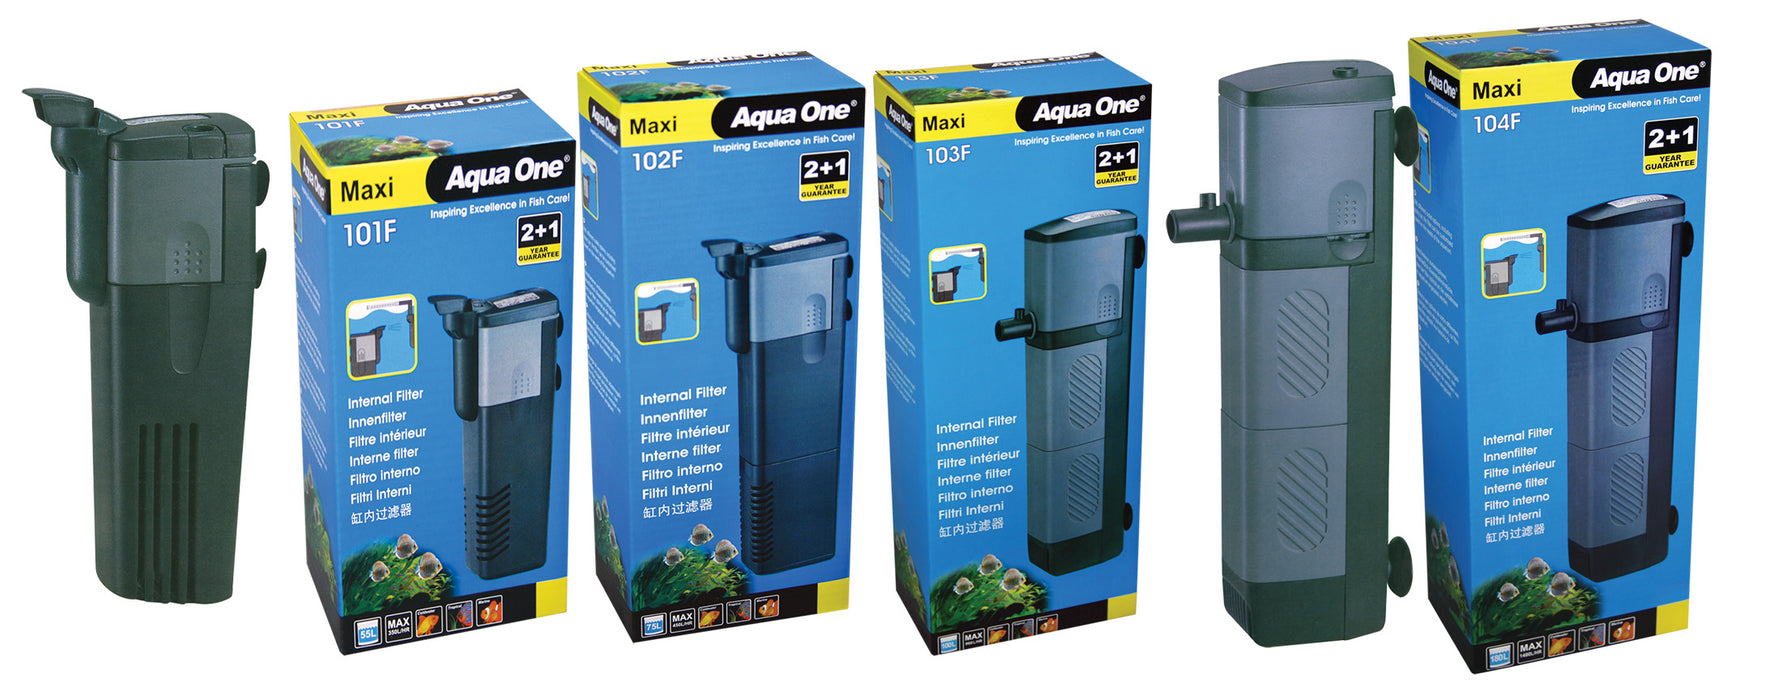 Aqua One Maxi Internal Filter